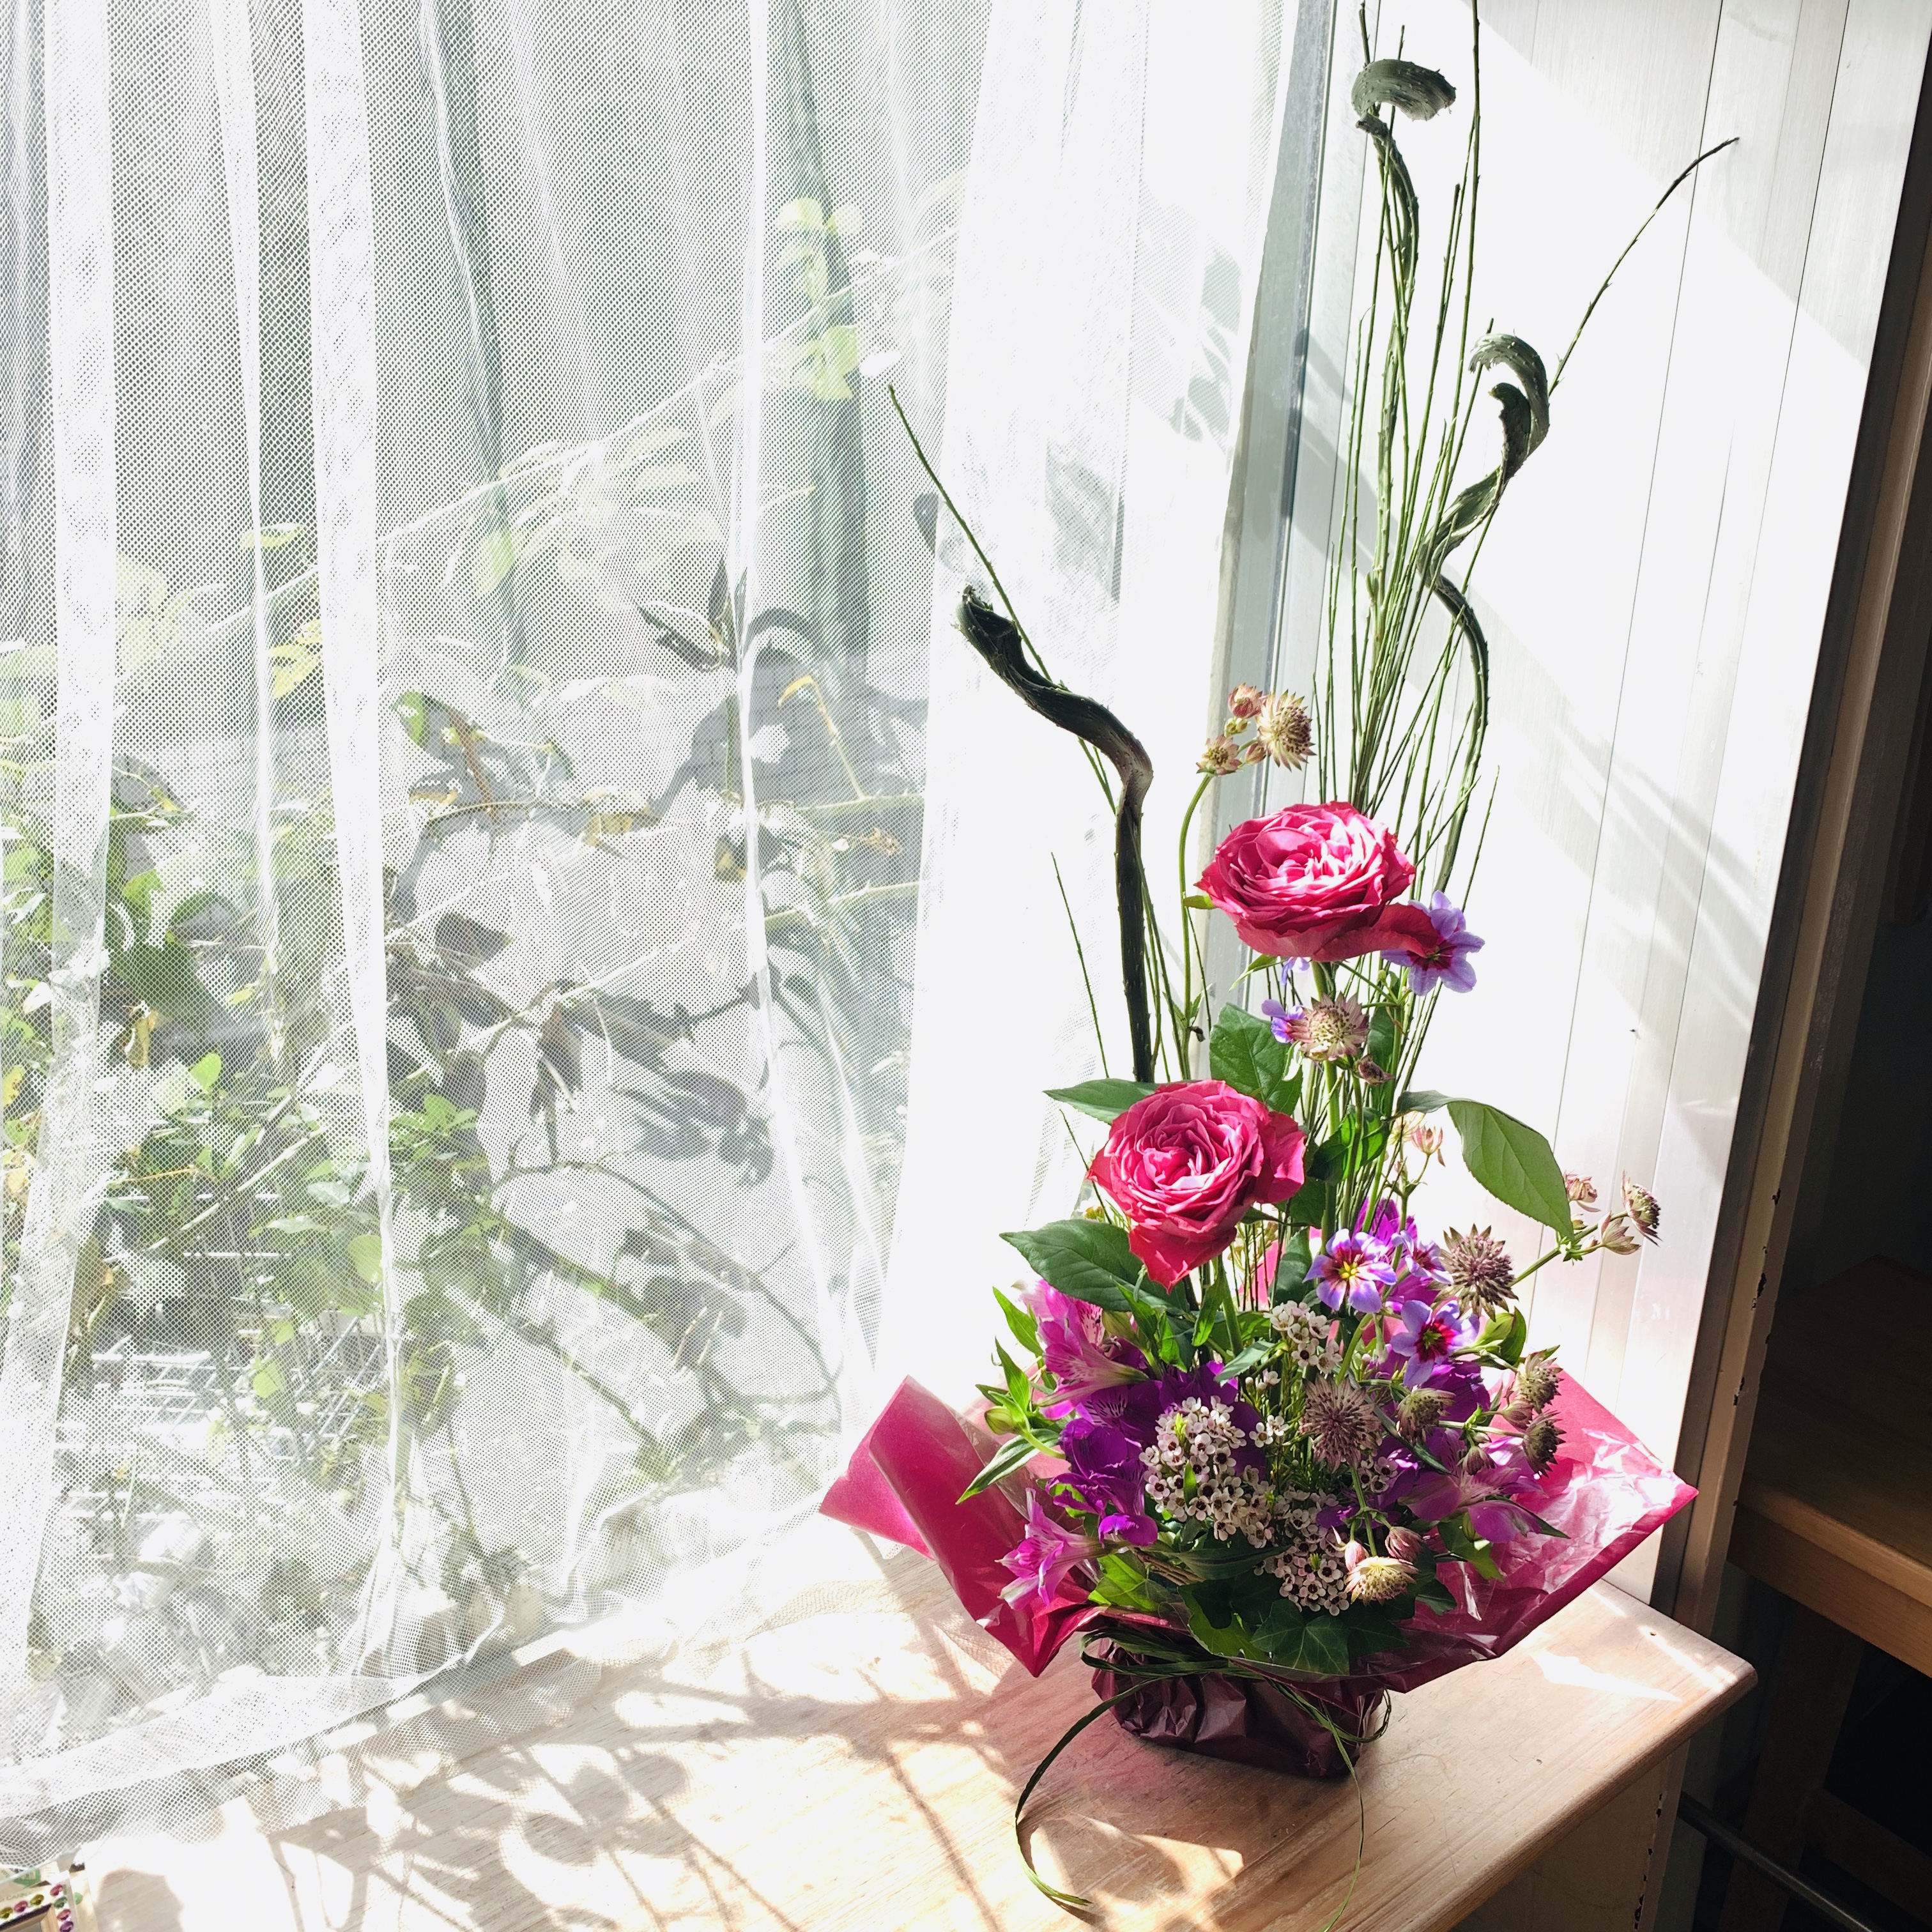 習い事を探すなら新横浜 菊名のお花教室 横浜金沢区のお花教室ラフルール